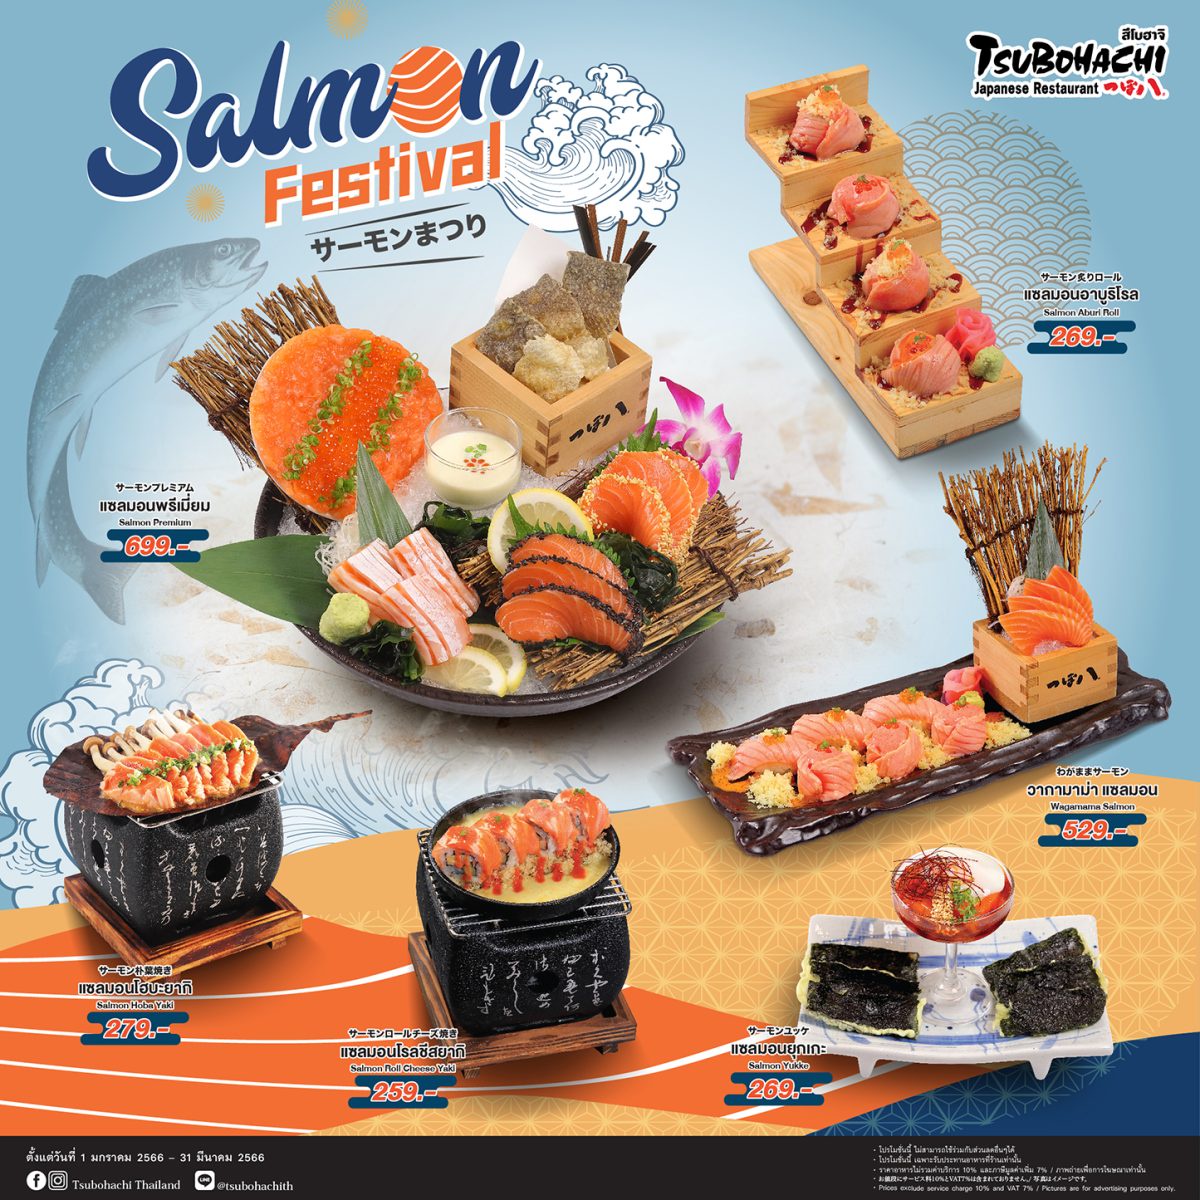 ร้านอาหารญี่ปุ่น สึโบฮาจิ จัดโปรโมชั่น Salmon Festival ขนความอร่อยเมนูแซลมอนพร้อมเสิร์ฟต้อนรับศักราชใหม่